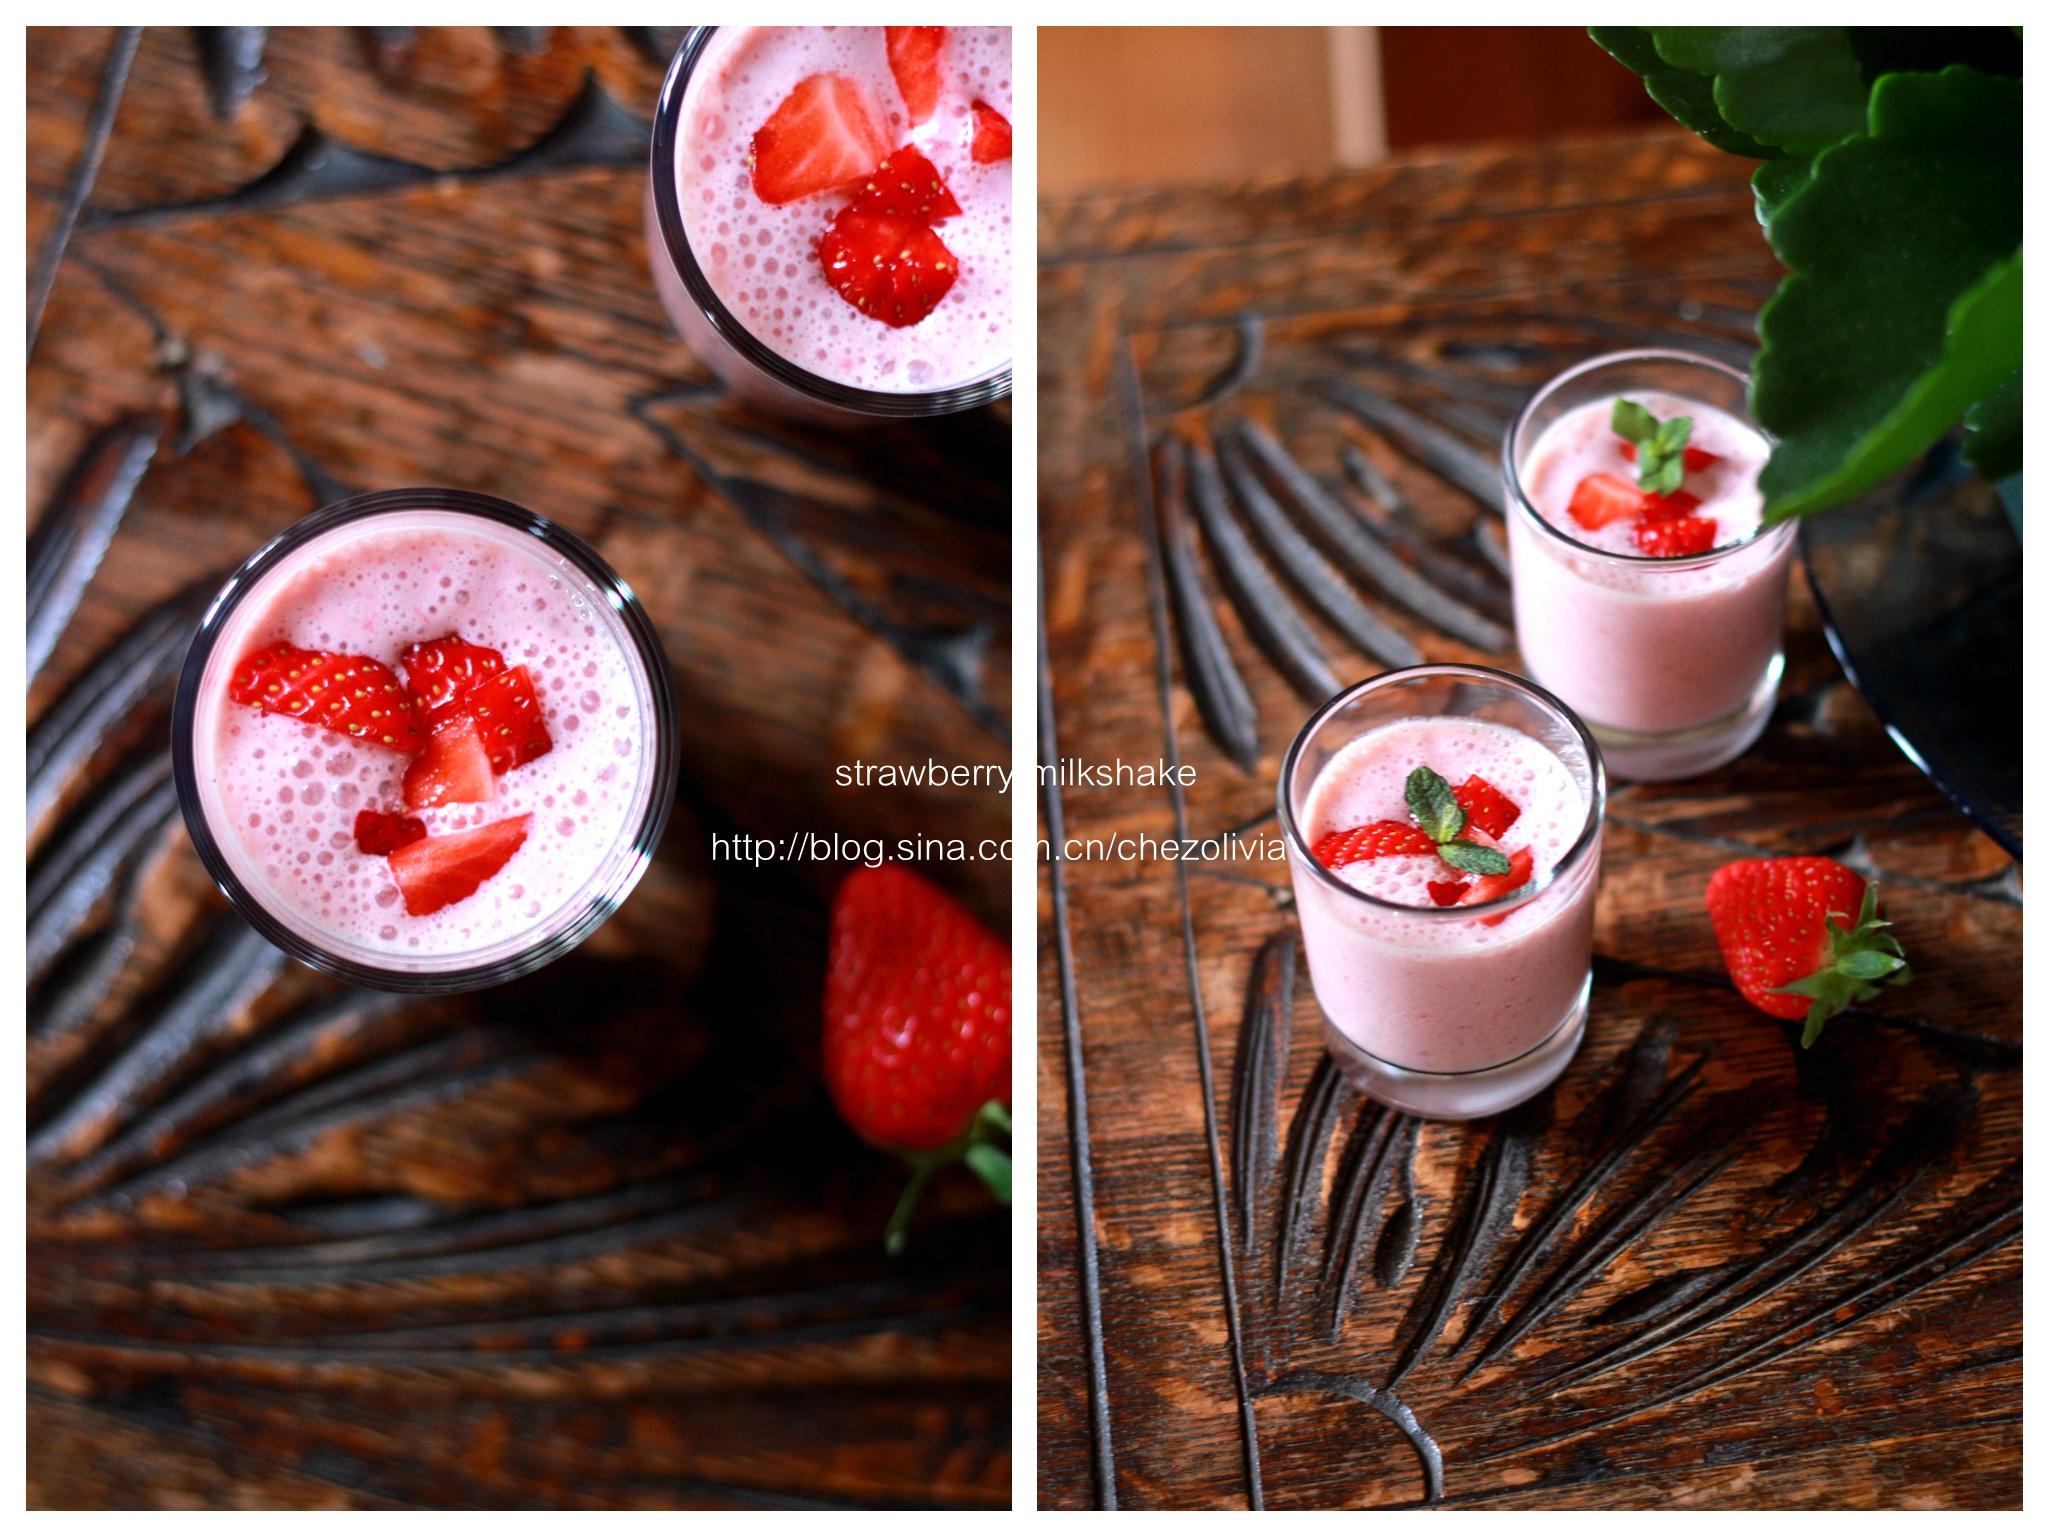 夏天的前奏--<草莓奶昔/strawberry milkshake>